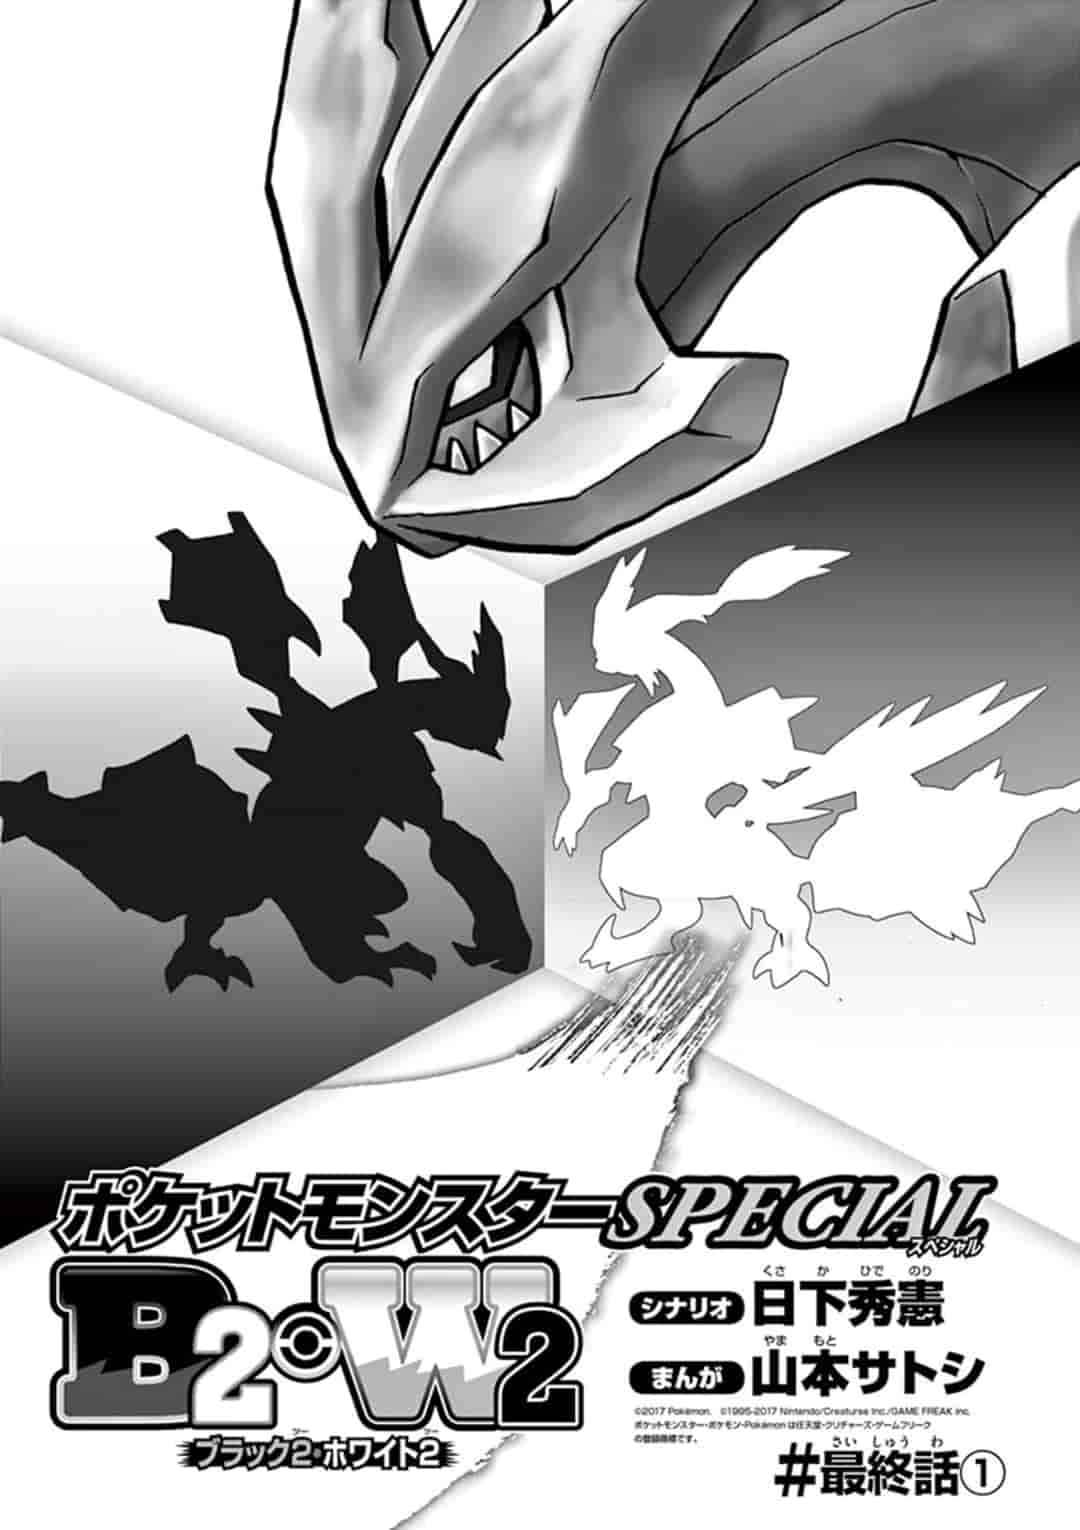 Pokémon Special Ch. 548.1 B2W2 Final Chapter #1